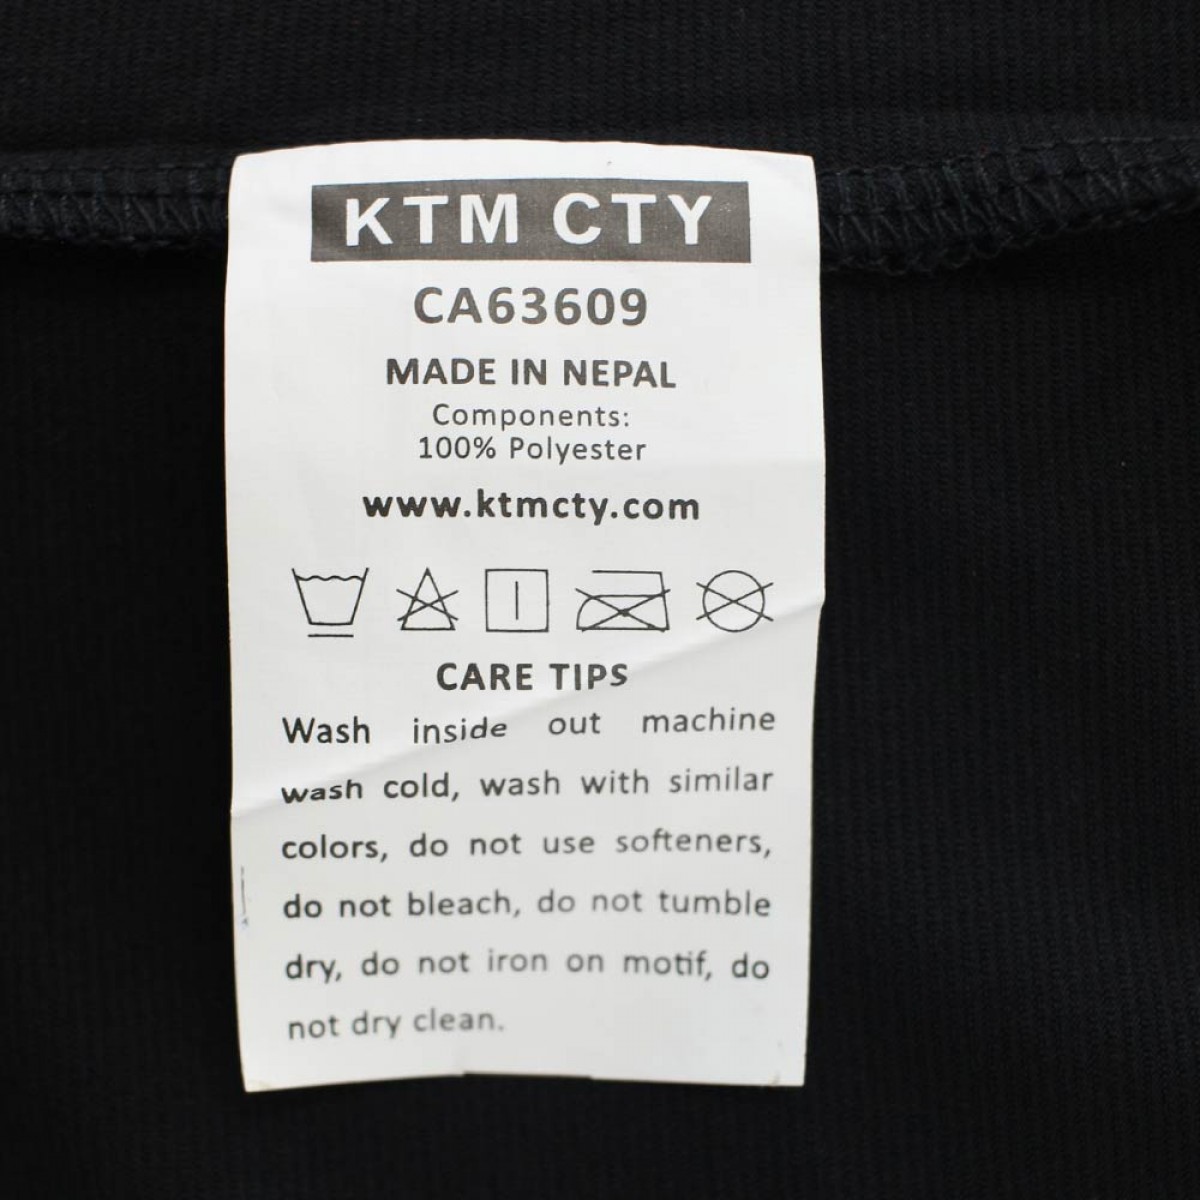 ktm-cty-round-neck-r-shirt-krnt25213-8a